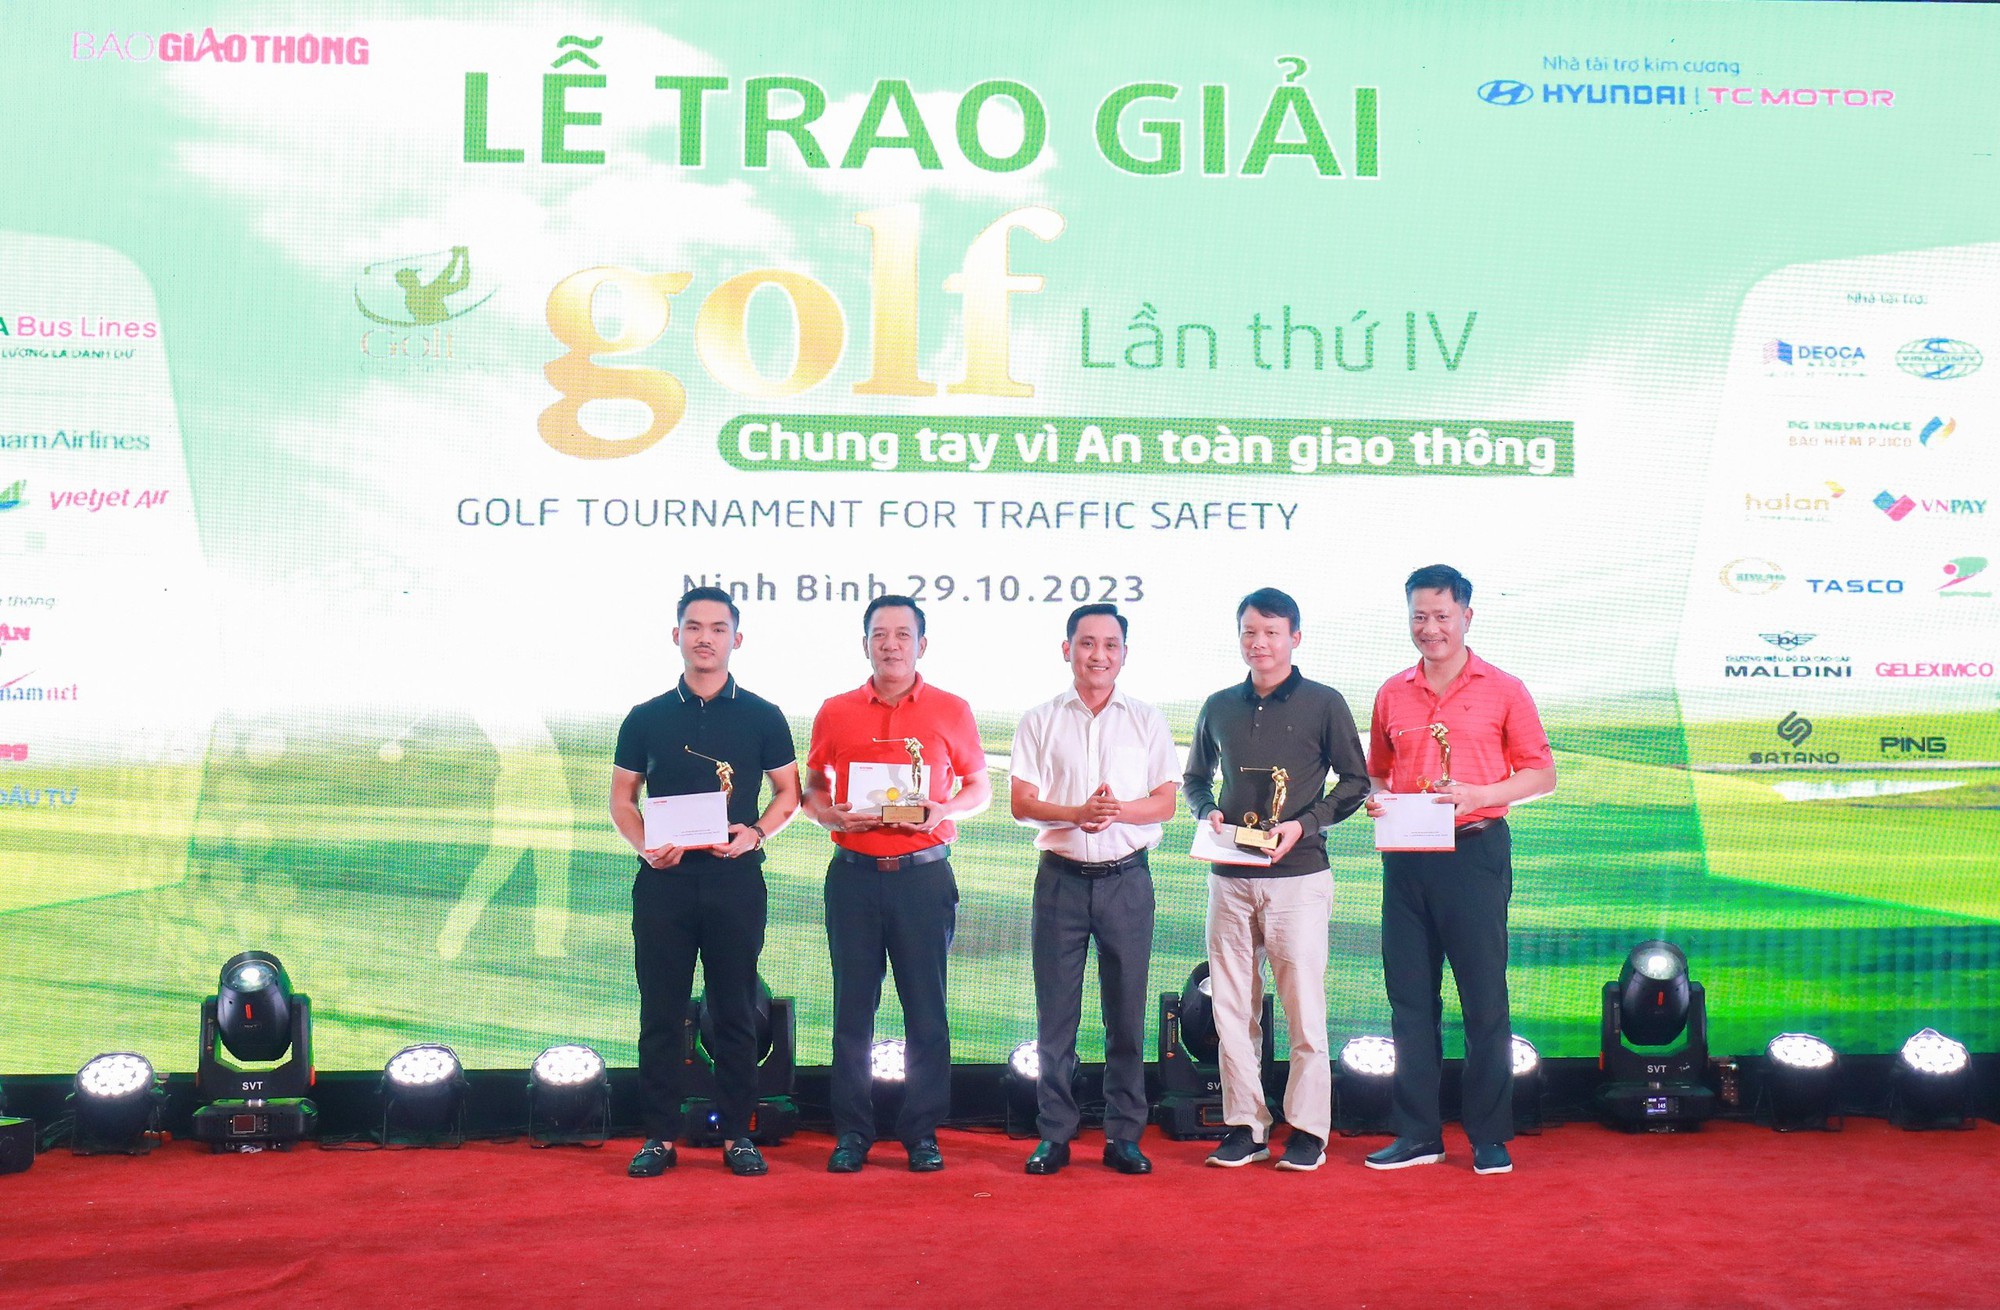 Golfer Nguyễn Hồng Hải vô địch Giải Golf chung tay vì ATGT 2023 - Ảnh 8.